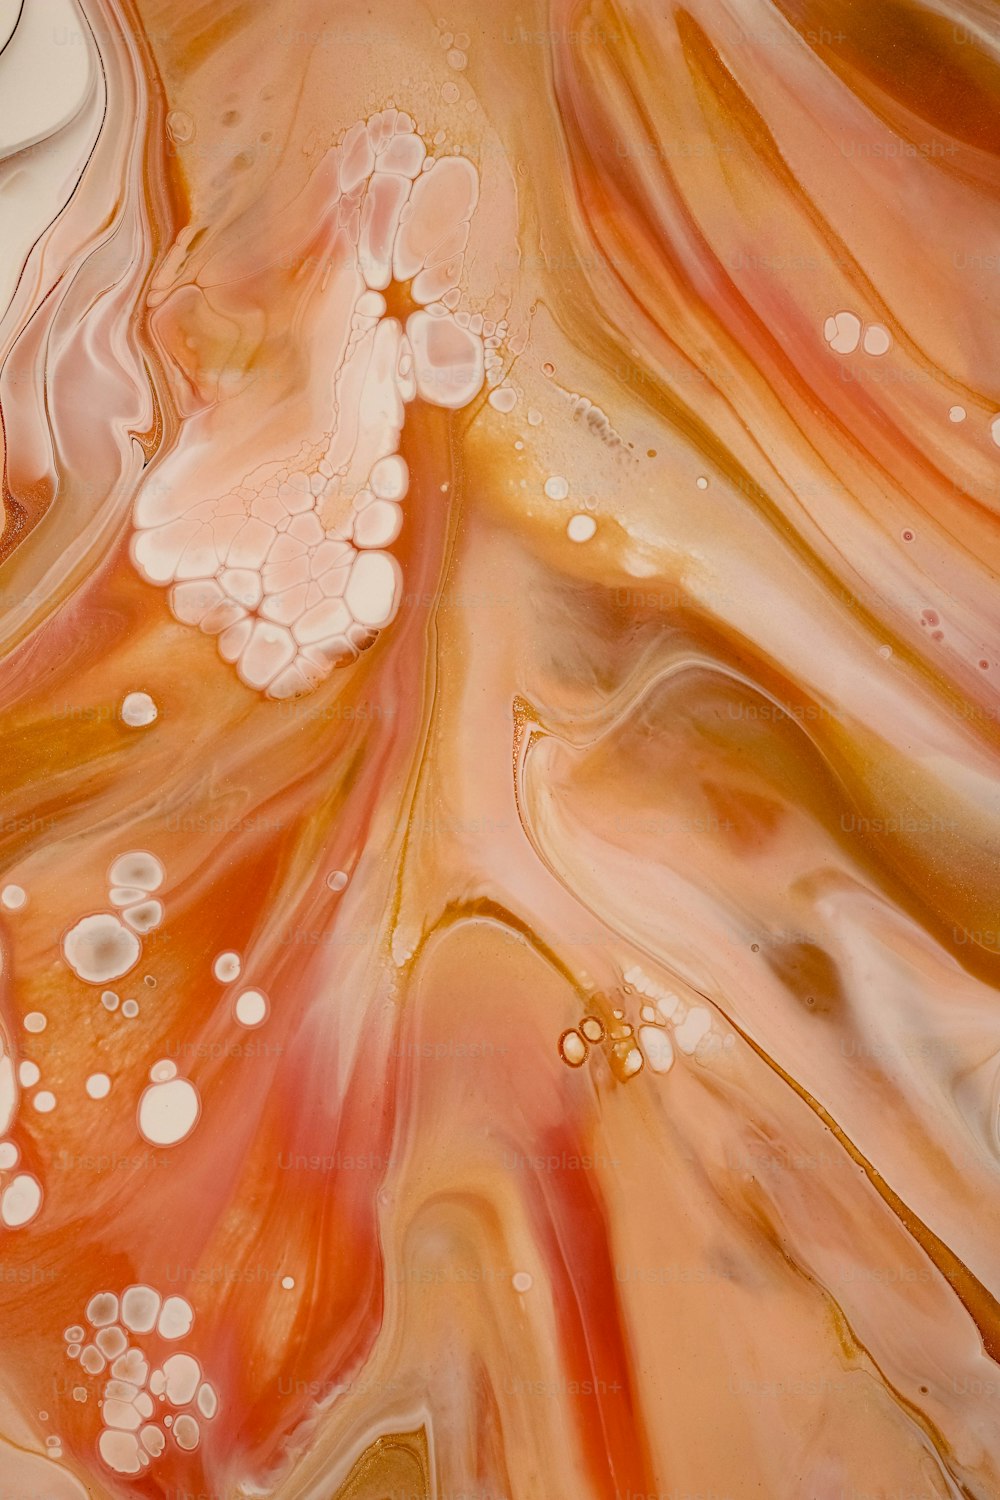 um close up de um líquido laranja e branco